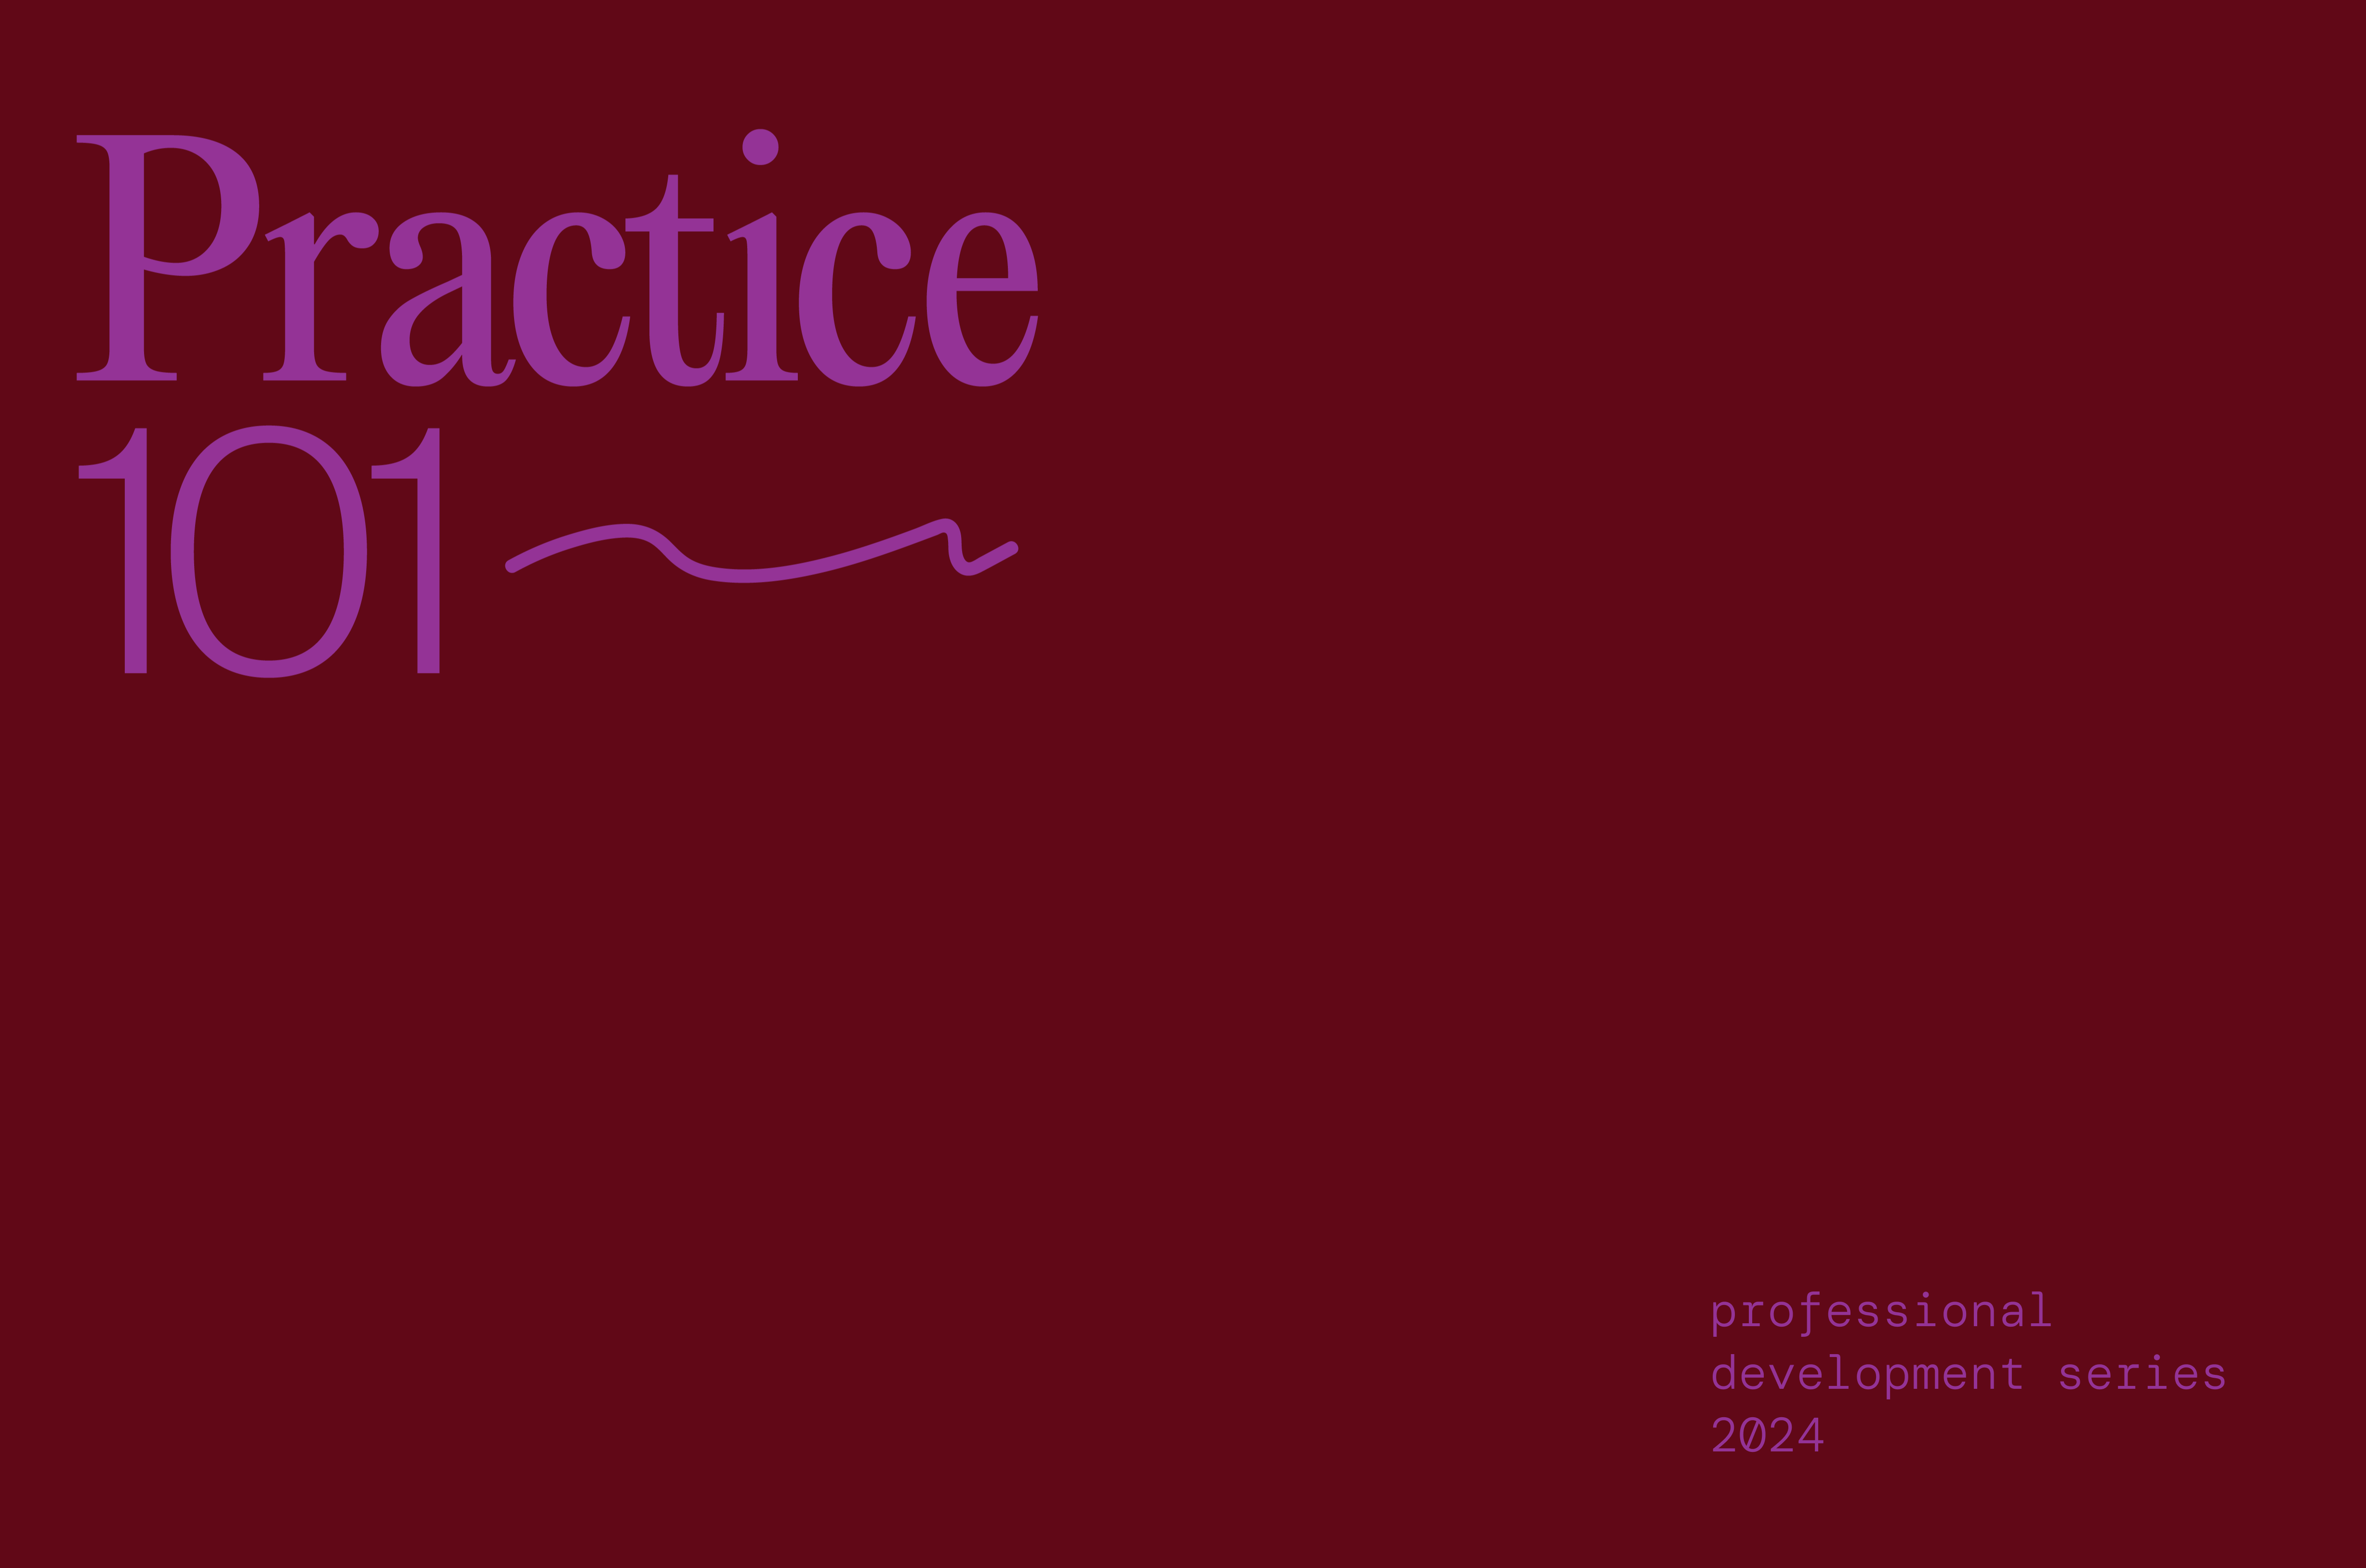 Practice 101